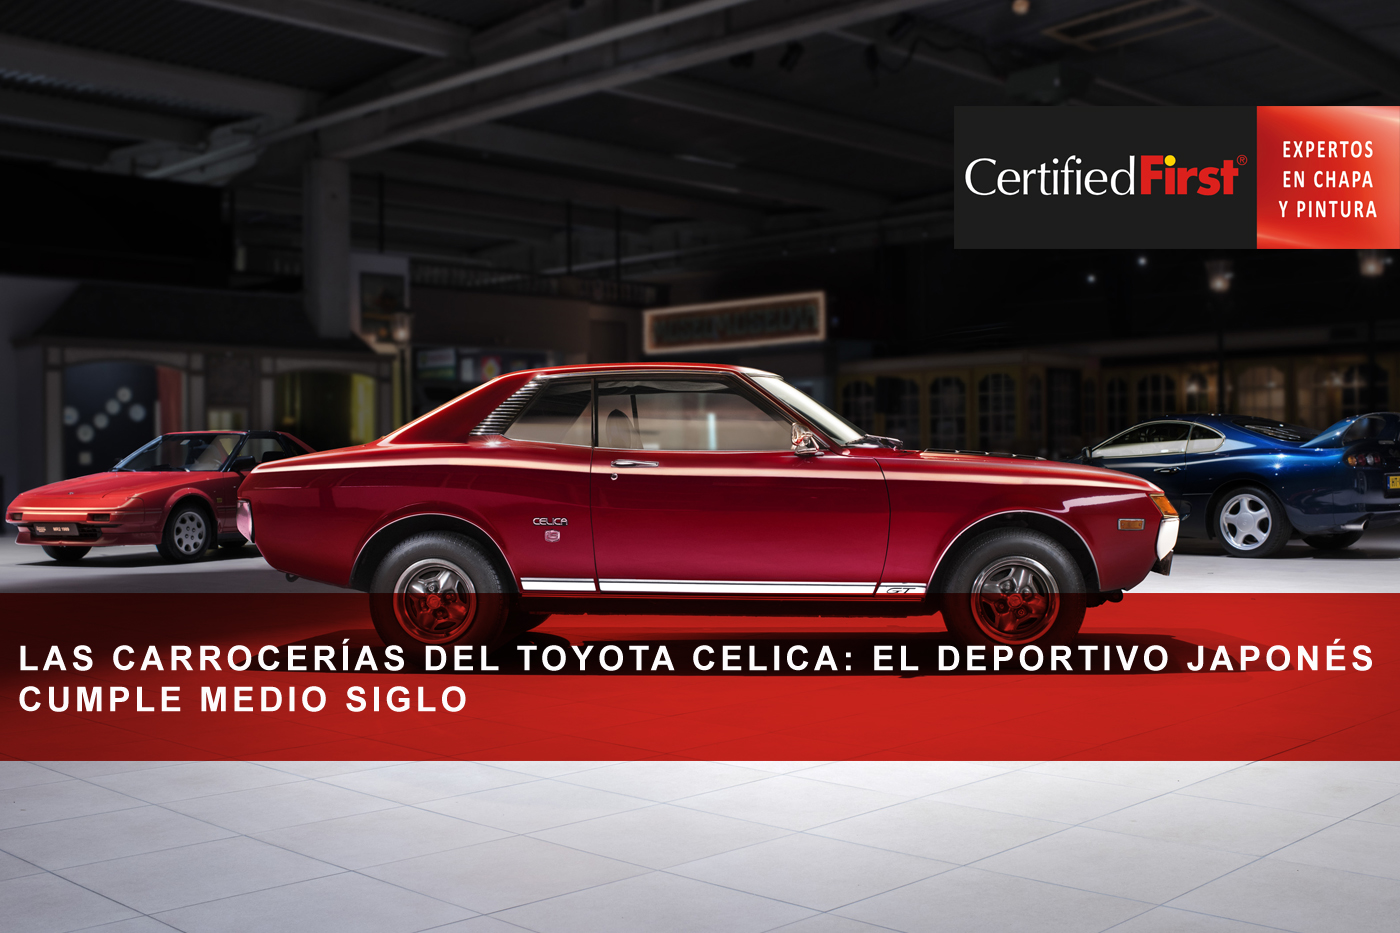 Las carrocerías del Toyota Celica: el deportivo japonés cumple medio siglo